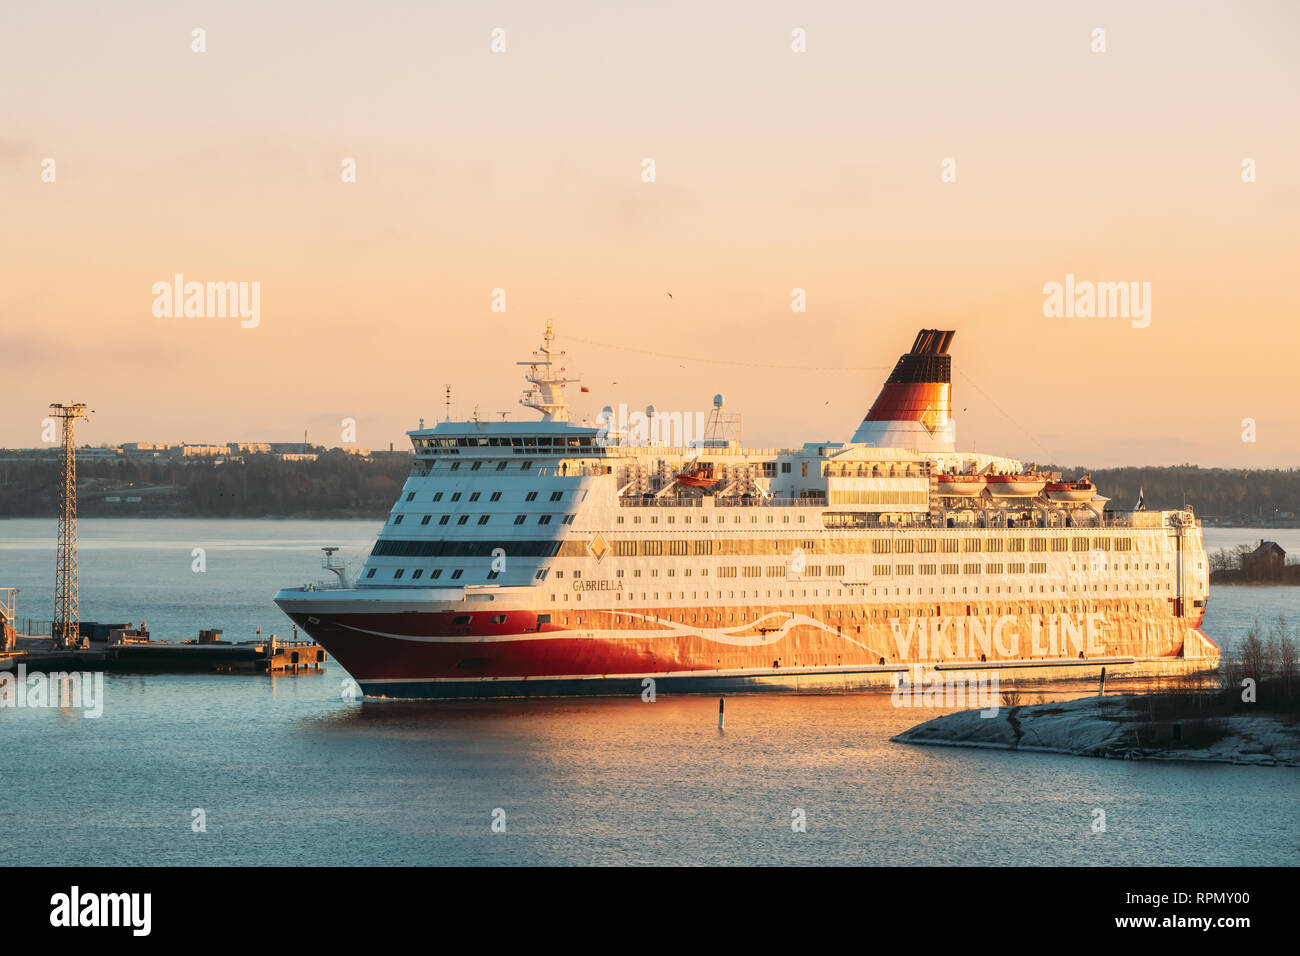 Helsinki, Finlandia - 11 dicembre 2016: vista del traghetto moderno traghetto Viking Line vicino a galleggiante Blekholmen Valkosaari Isola presso Sunrise Sky. Foto Stock